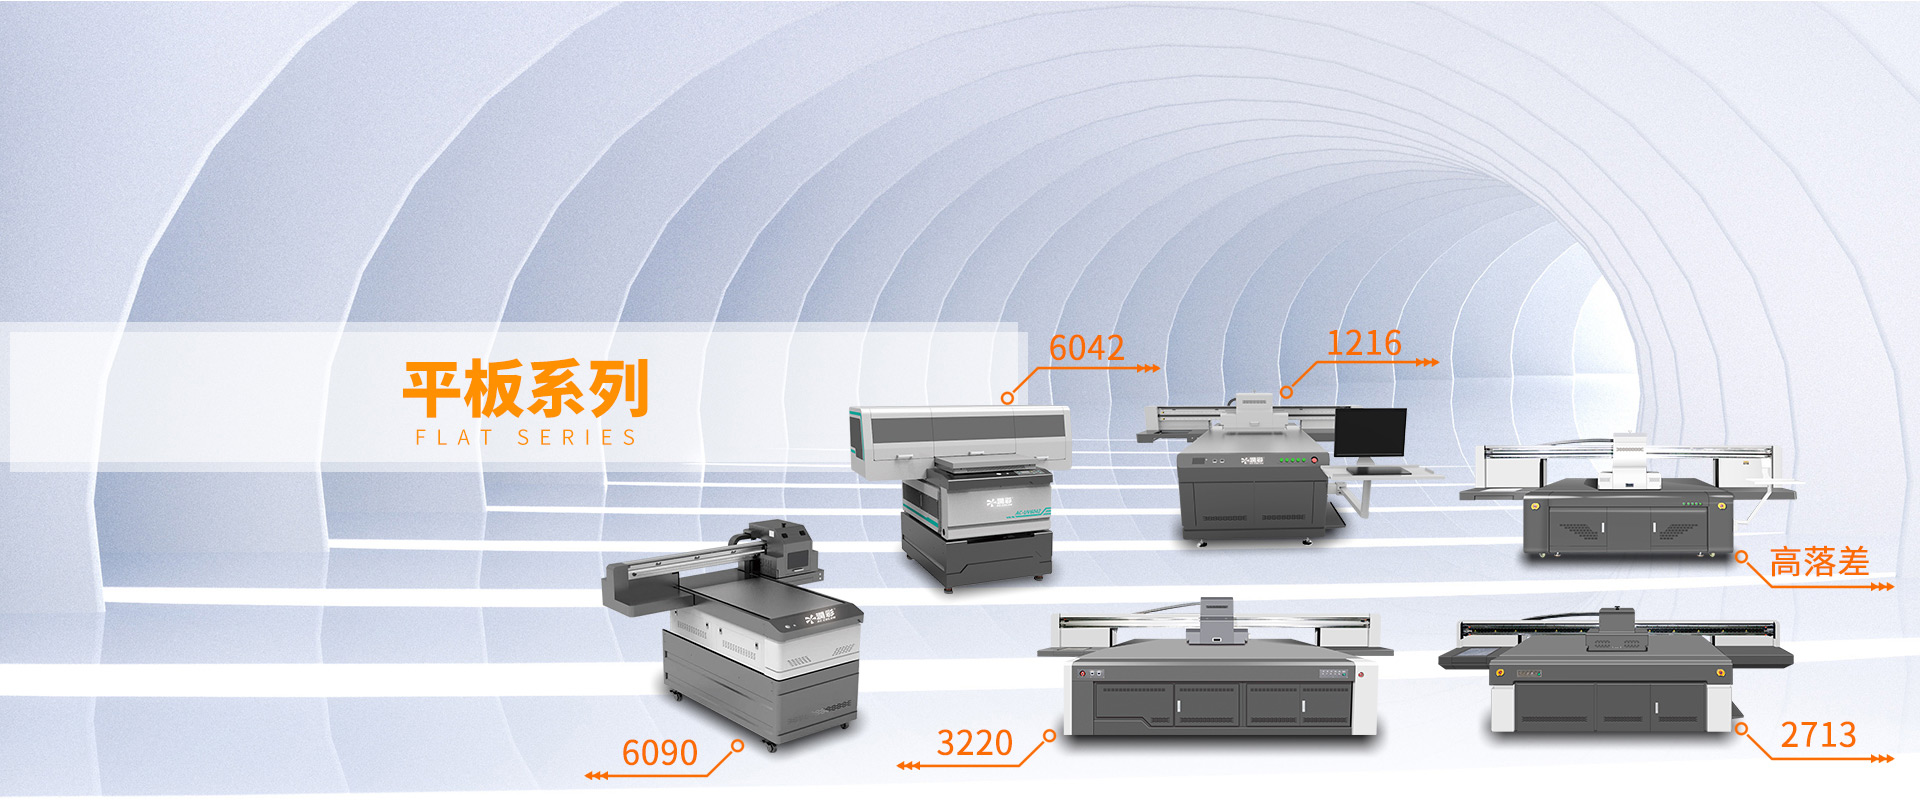 G5i喷头理光G6 uv平板打印机系列